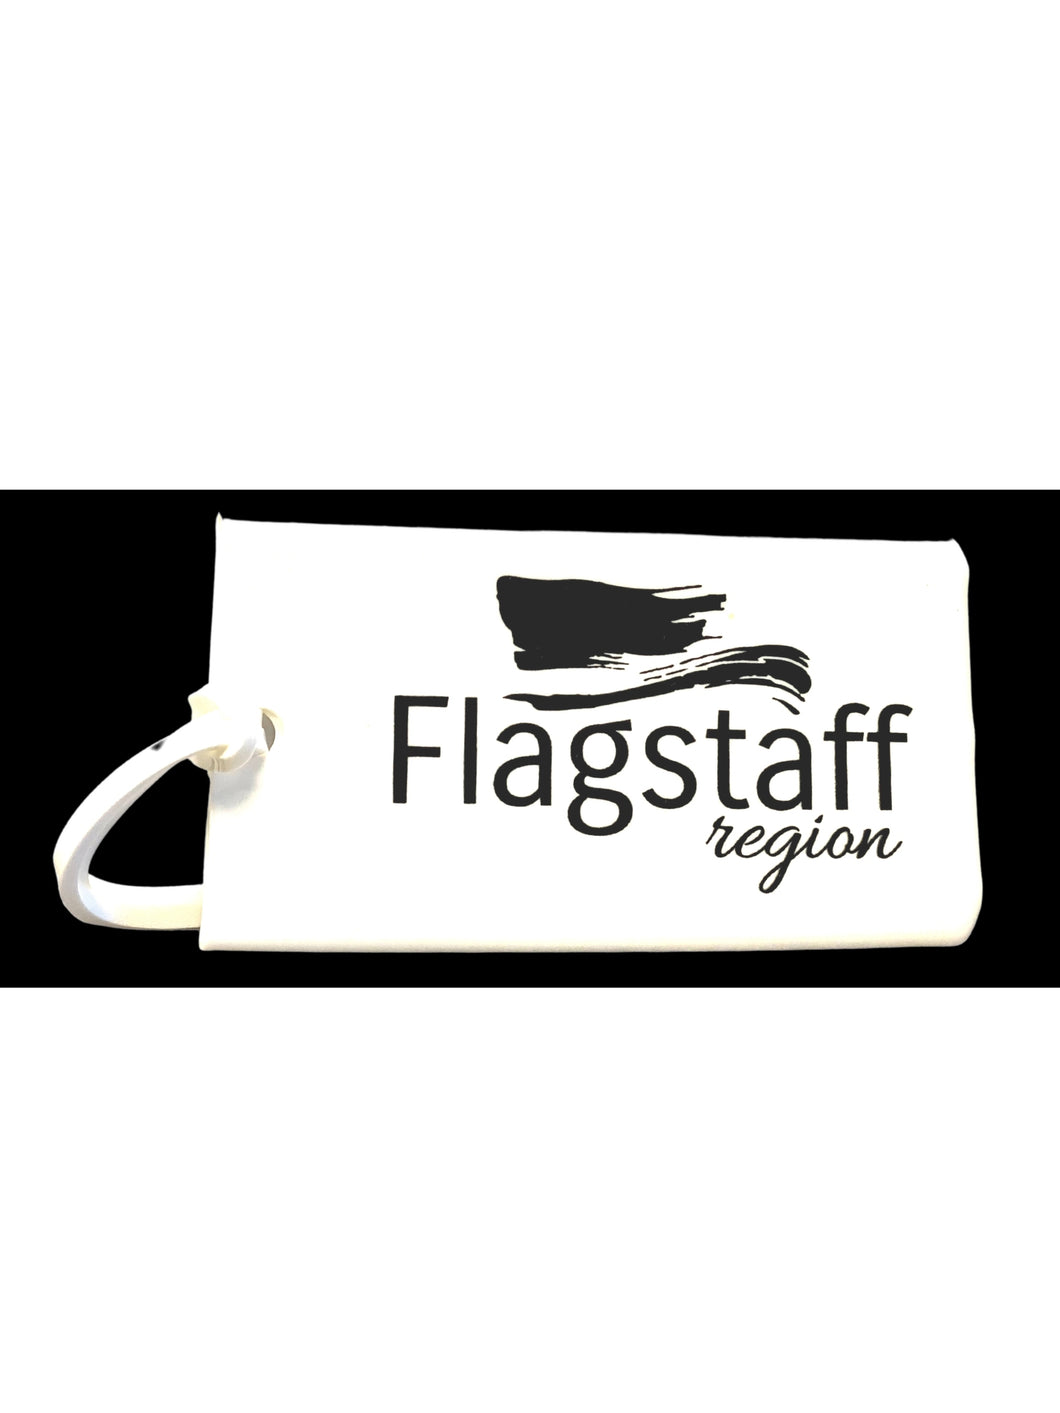 Flagstaff Region Bag Tags